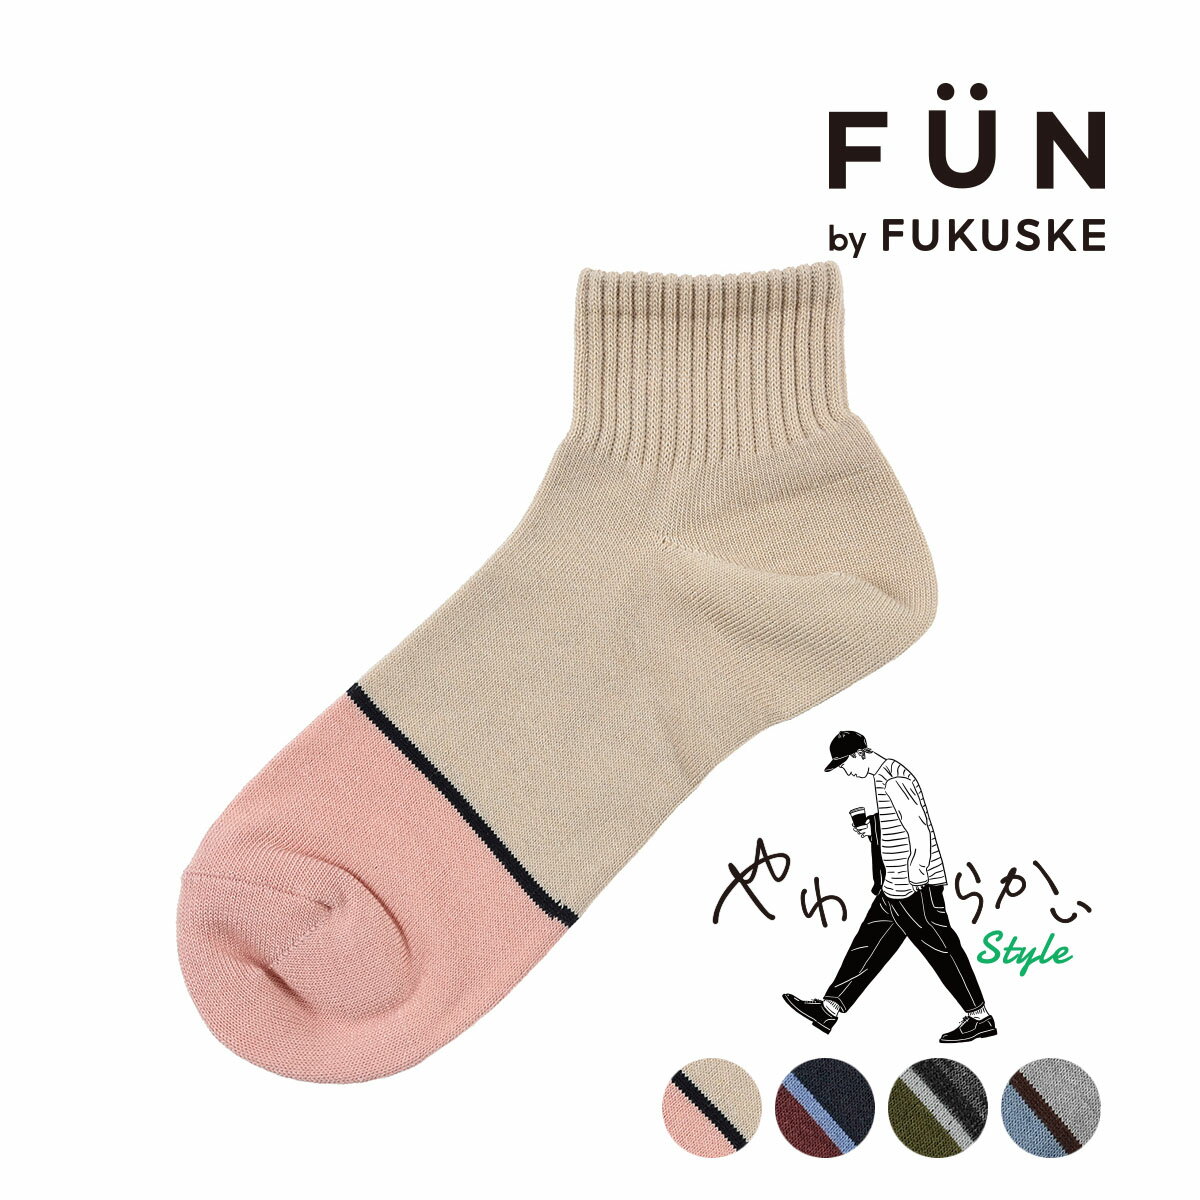 fukuske FUN(フクスケファン) ： やわらかいStyle 無地 つま先バイカラー ソックス ショート丈 毛玉になりにくい(3FY03W) 紳士 男性 メンズ 靴下 フクスケ fukuske 福助 公式